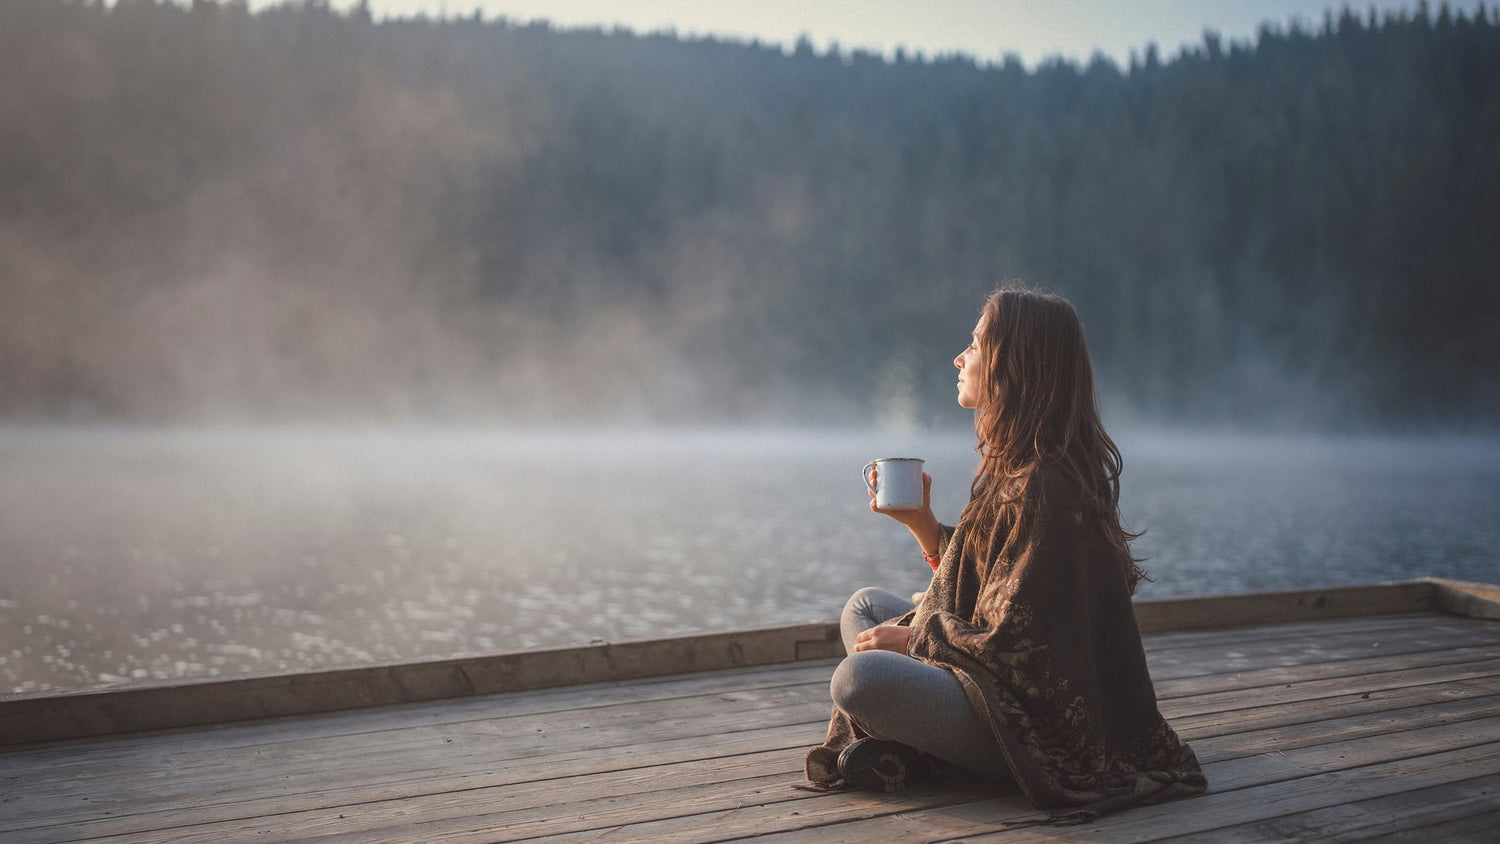 Achtsame Frau entspannt am See und hält eine Tasse - Ziele erreichen und Erfolg durch Achtsamkeit